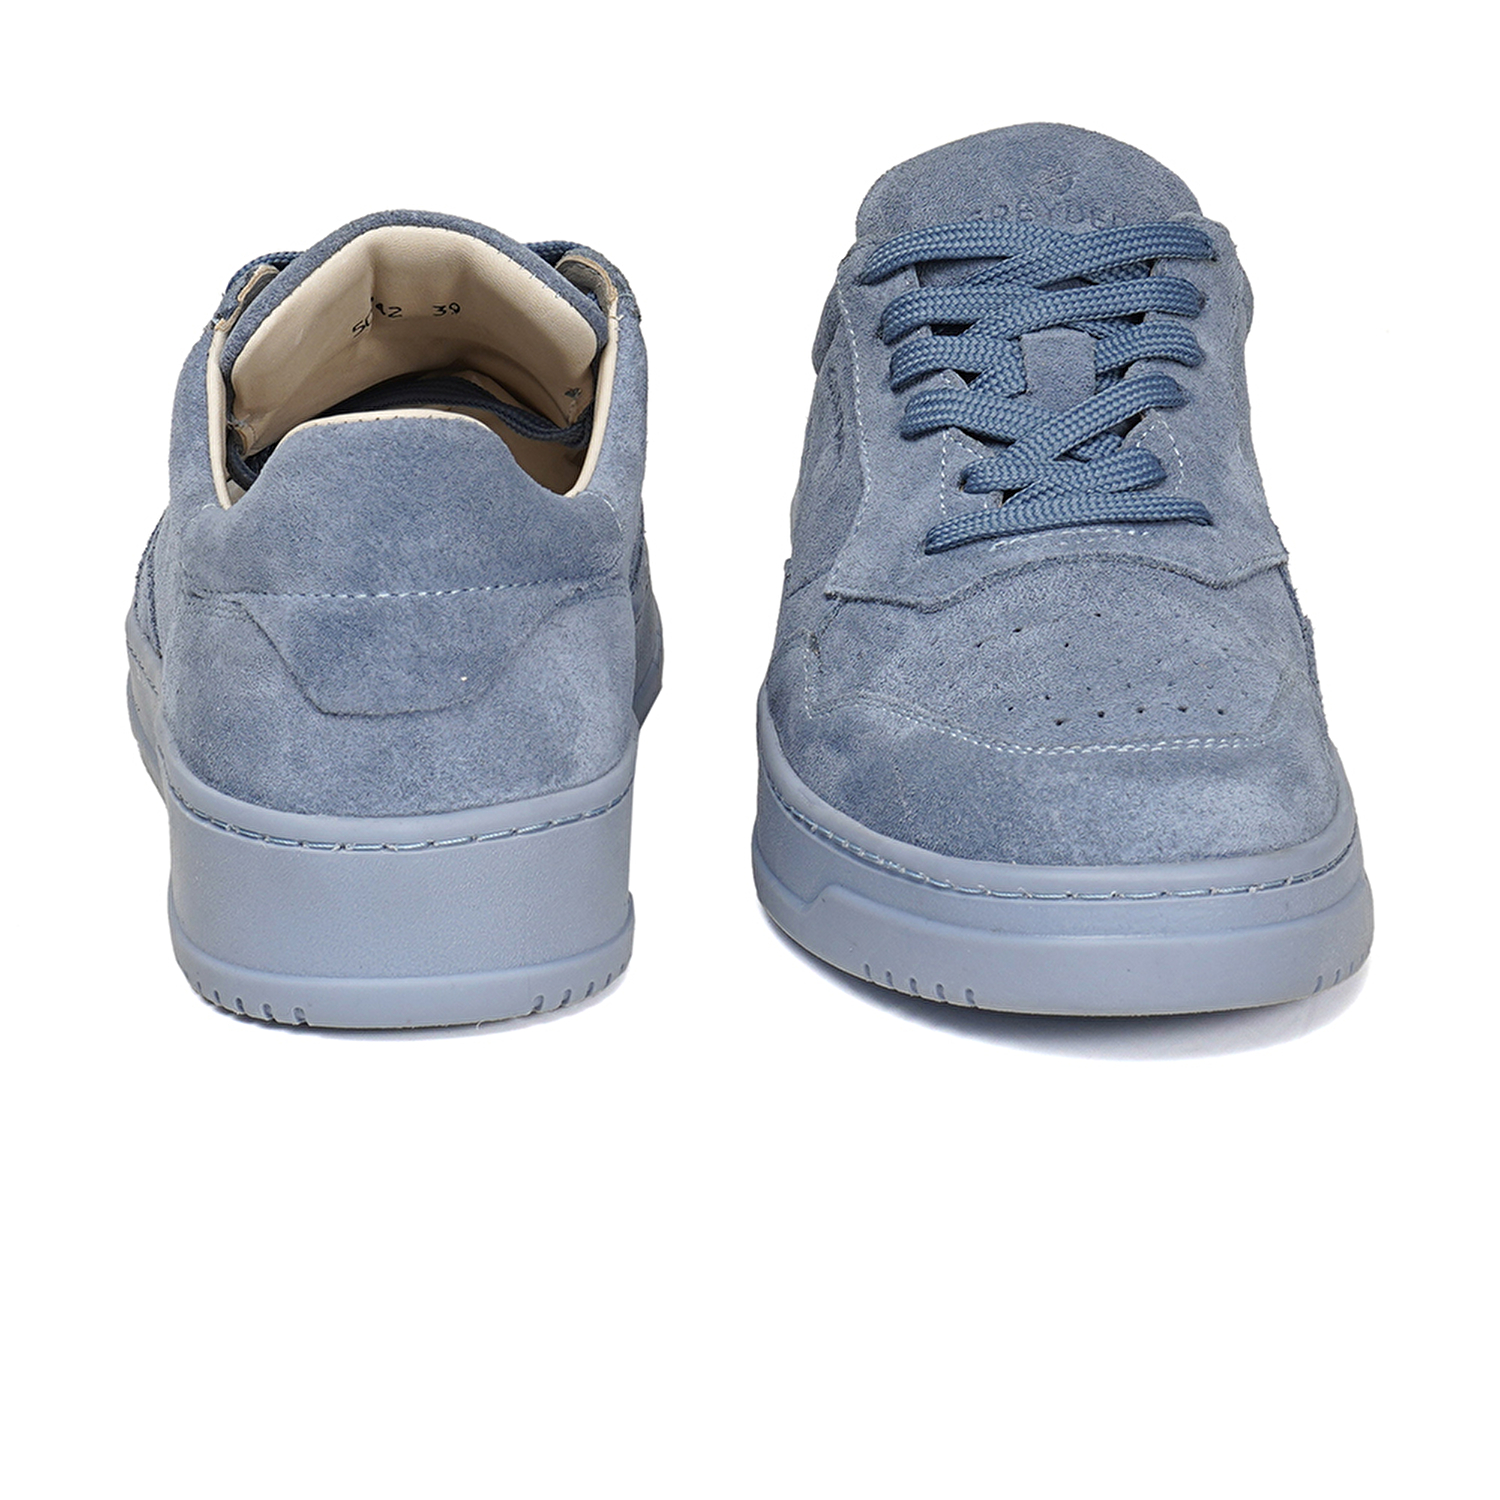 Kadın Mavi Süet Hakiki Deri Sneaker Ayakkabı 3Y2SA50742-7